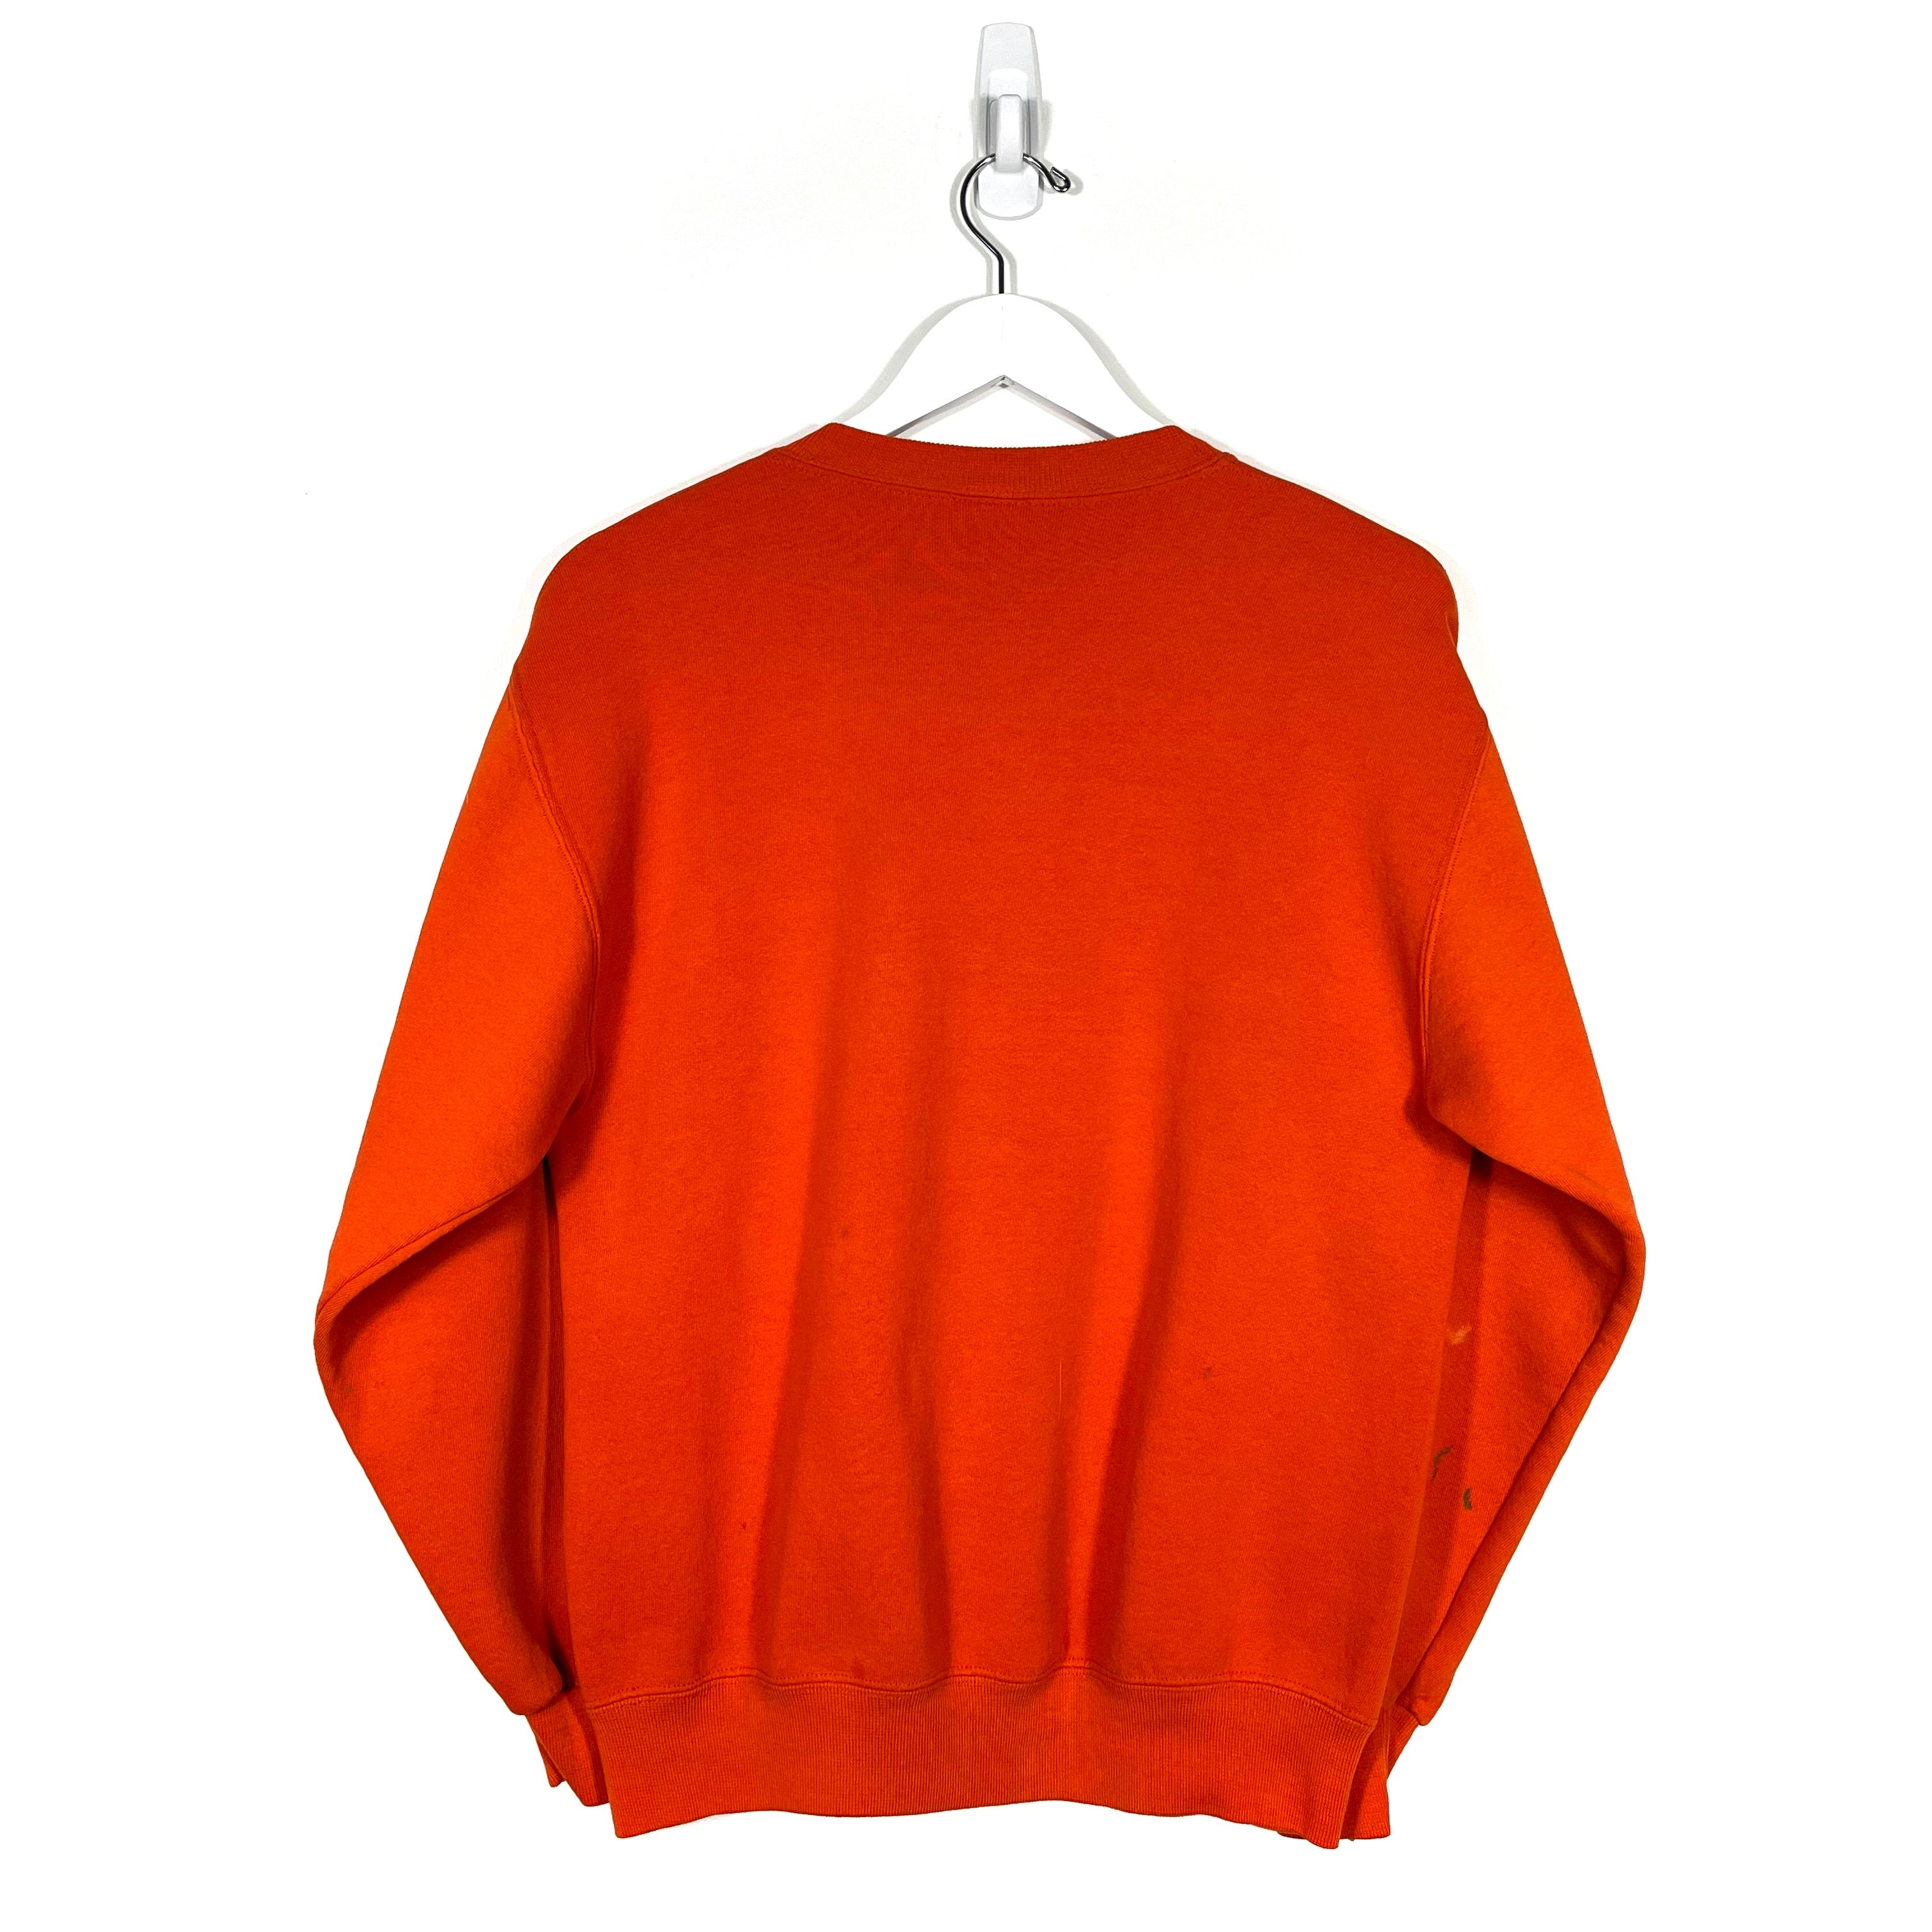 Vintage OSU Crewneck Sweatshirt - Men's Medium